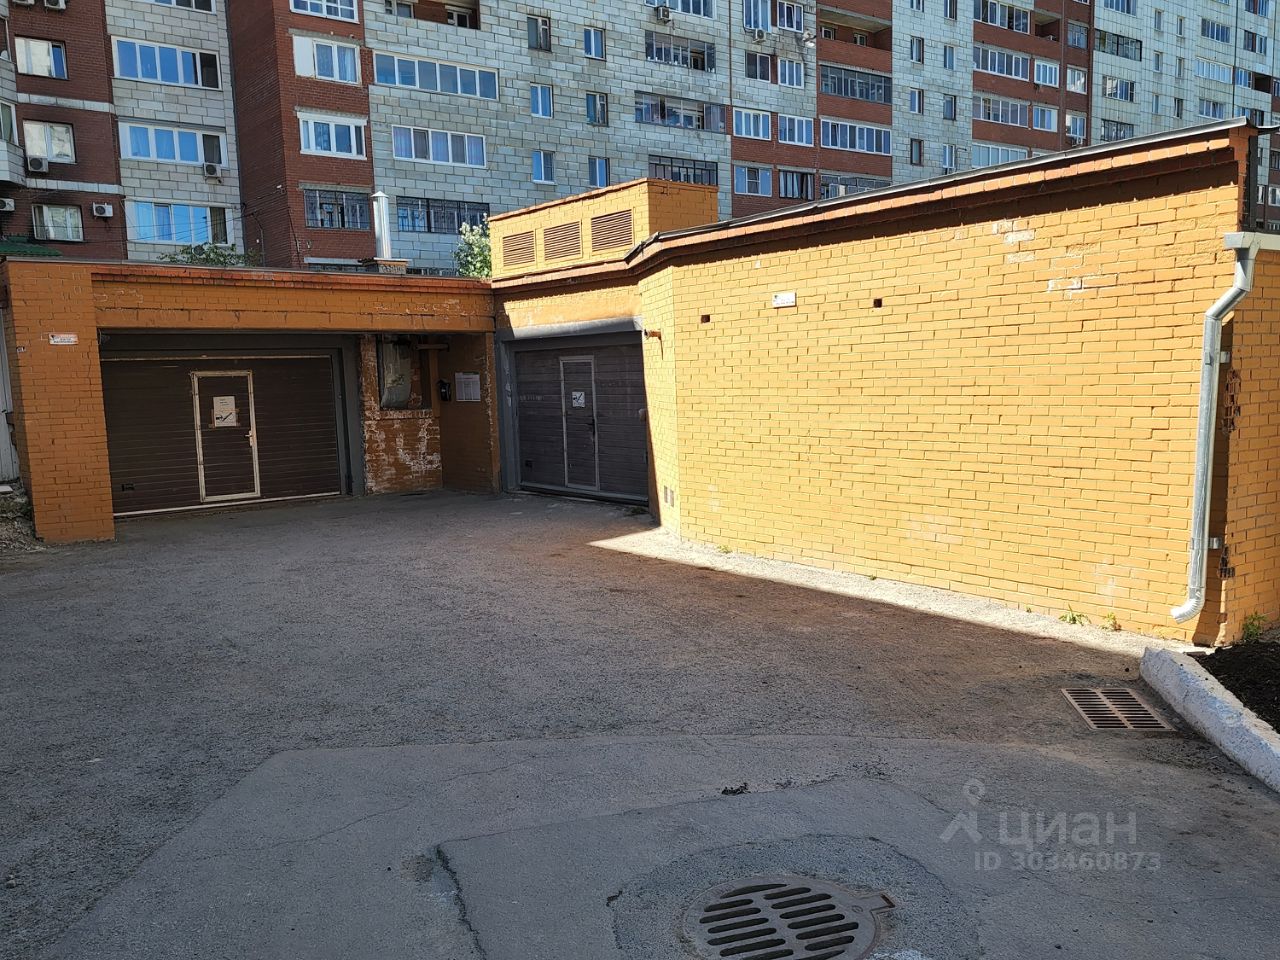 Сдается гараж в Екатеринбурге, площадь 16 кв.м. Удобное расположение, кирпичное строение, хорошие подъездные пути.